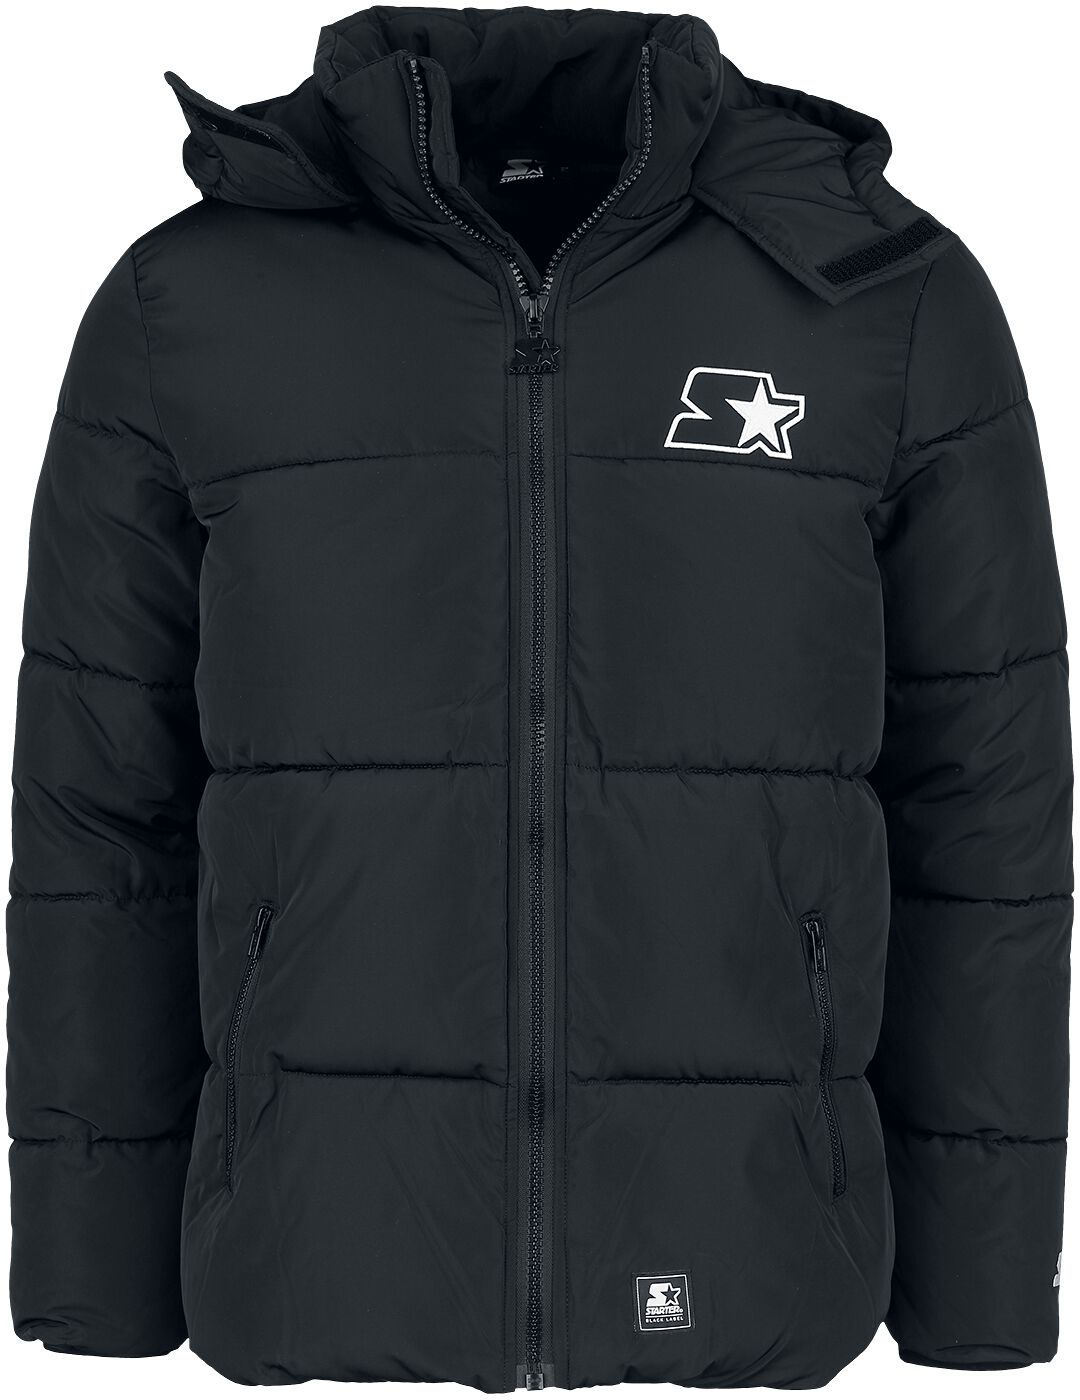 Starter Winterjacke - Starter Puffer Jacket - M - für Männer - Größe M - schwarz